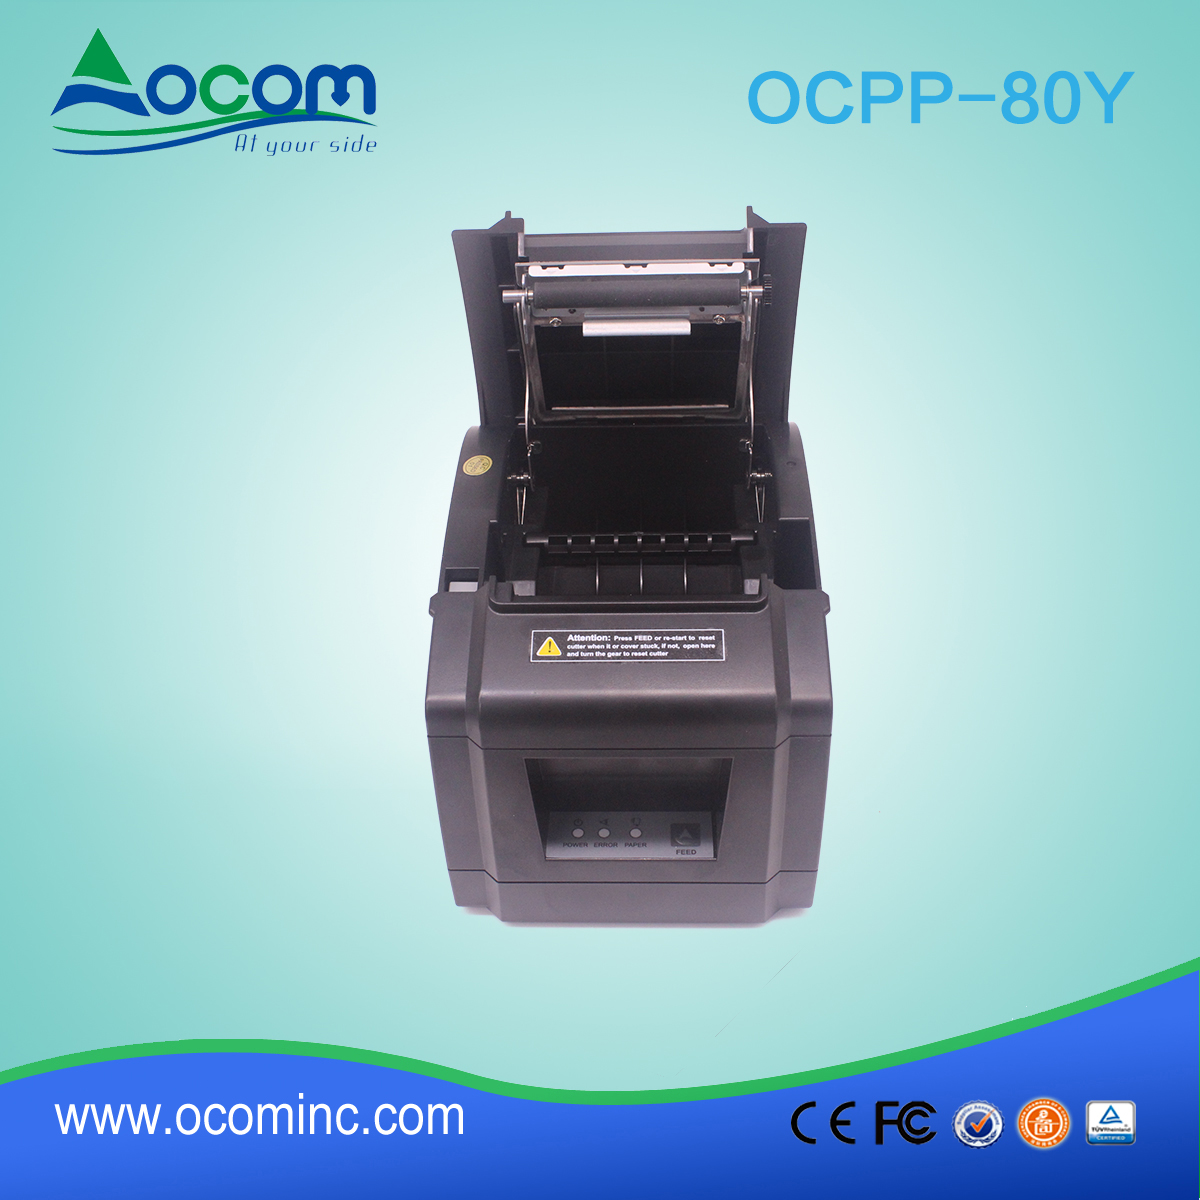 OCPP-80Y-China billig 80mm Thermodrucker mit Auto Cutter